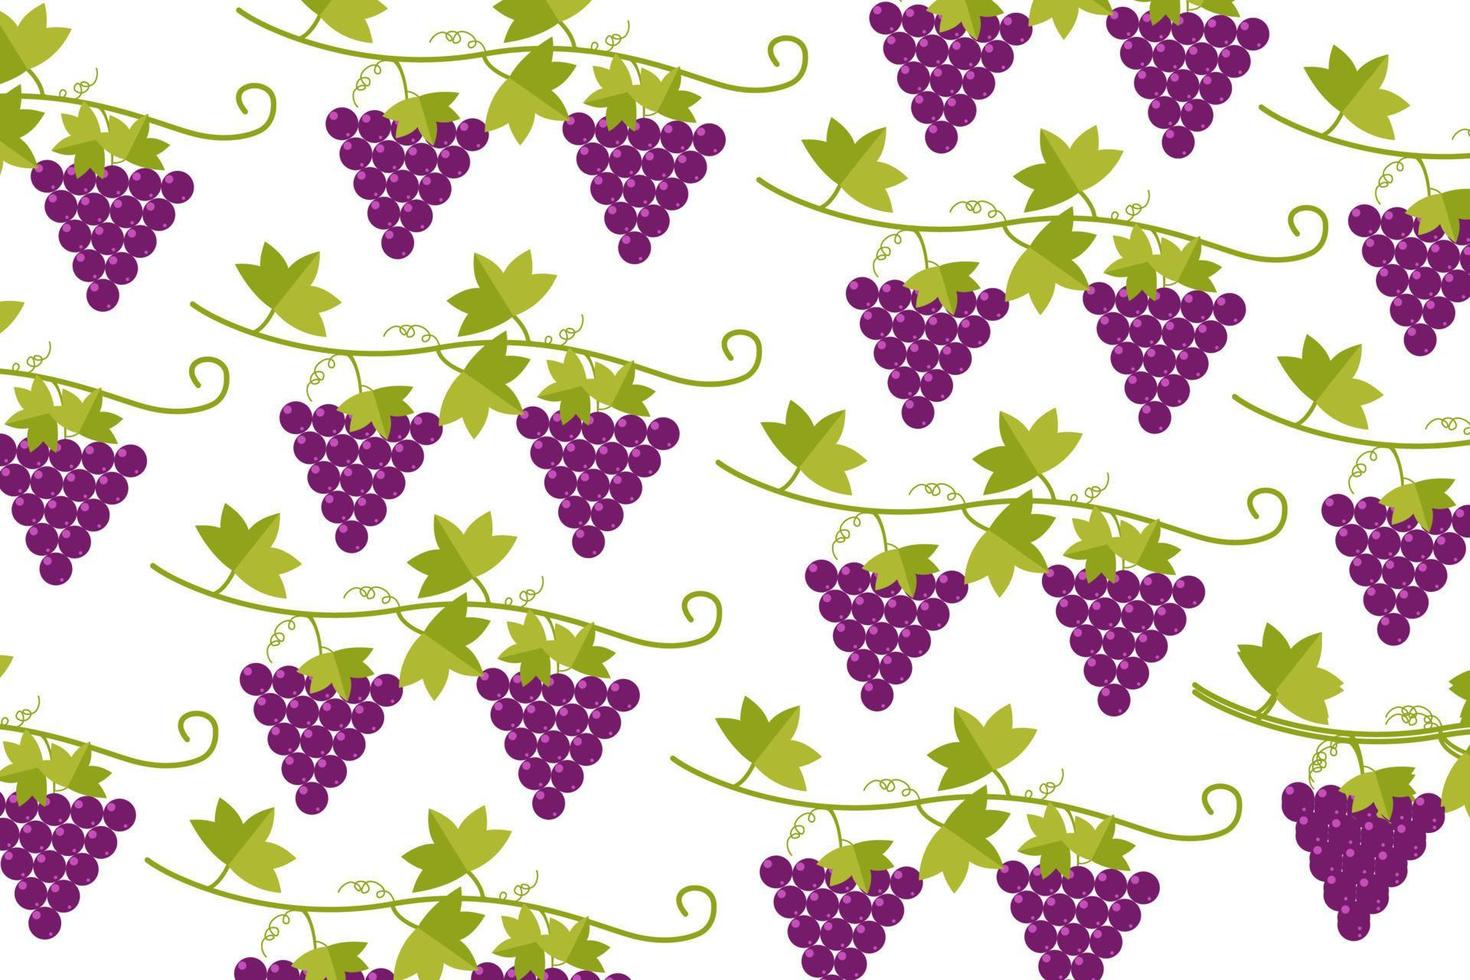 conception de raisins motif de baies violettes sans vecteur